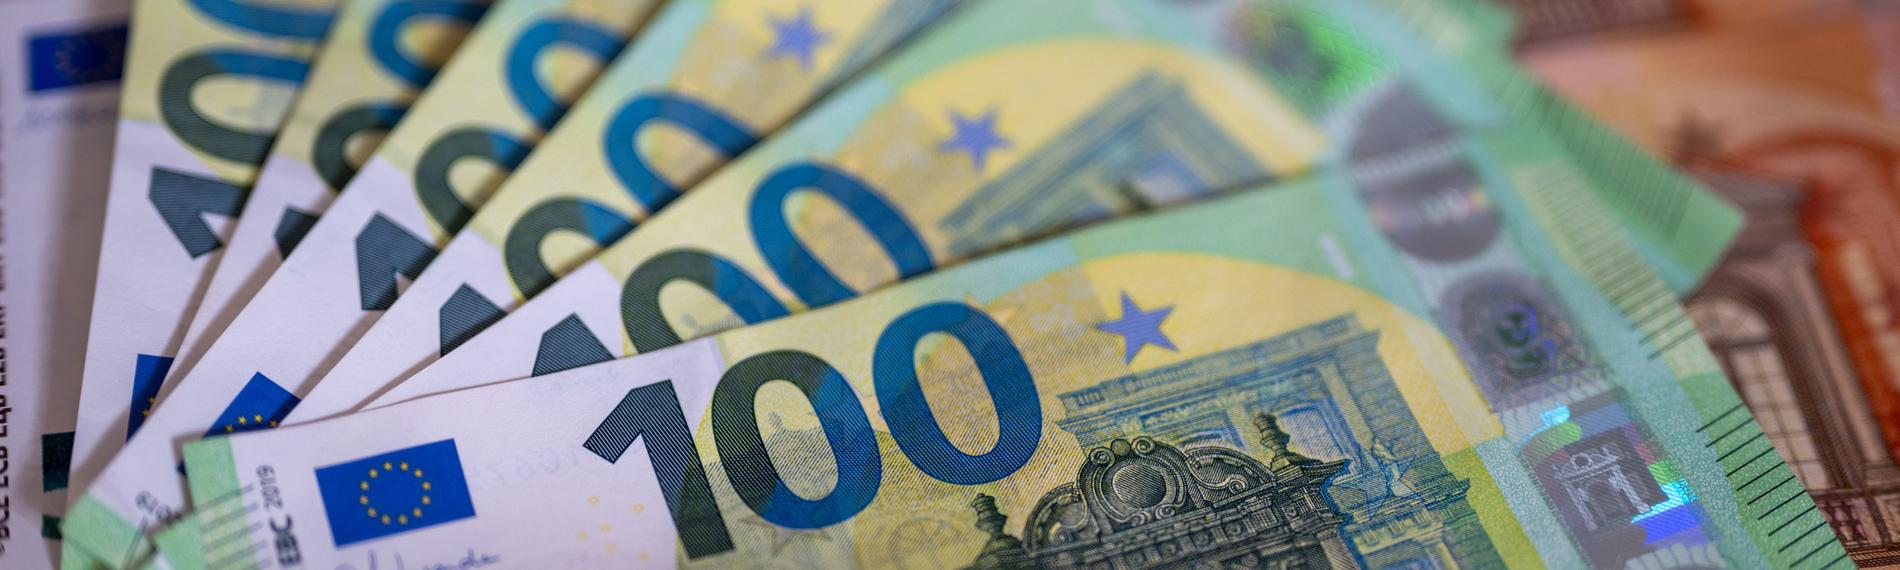 Sechs 100 Euro-Scheine liegen aufgefächert auf 10 Euro-Scheinen.